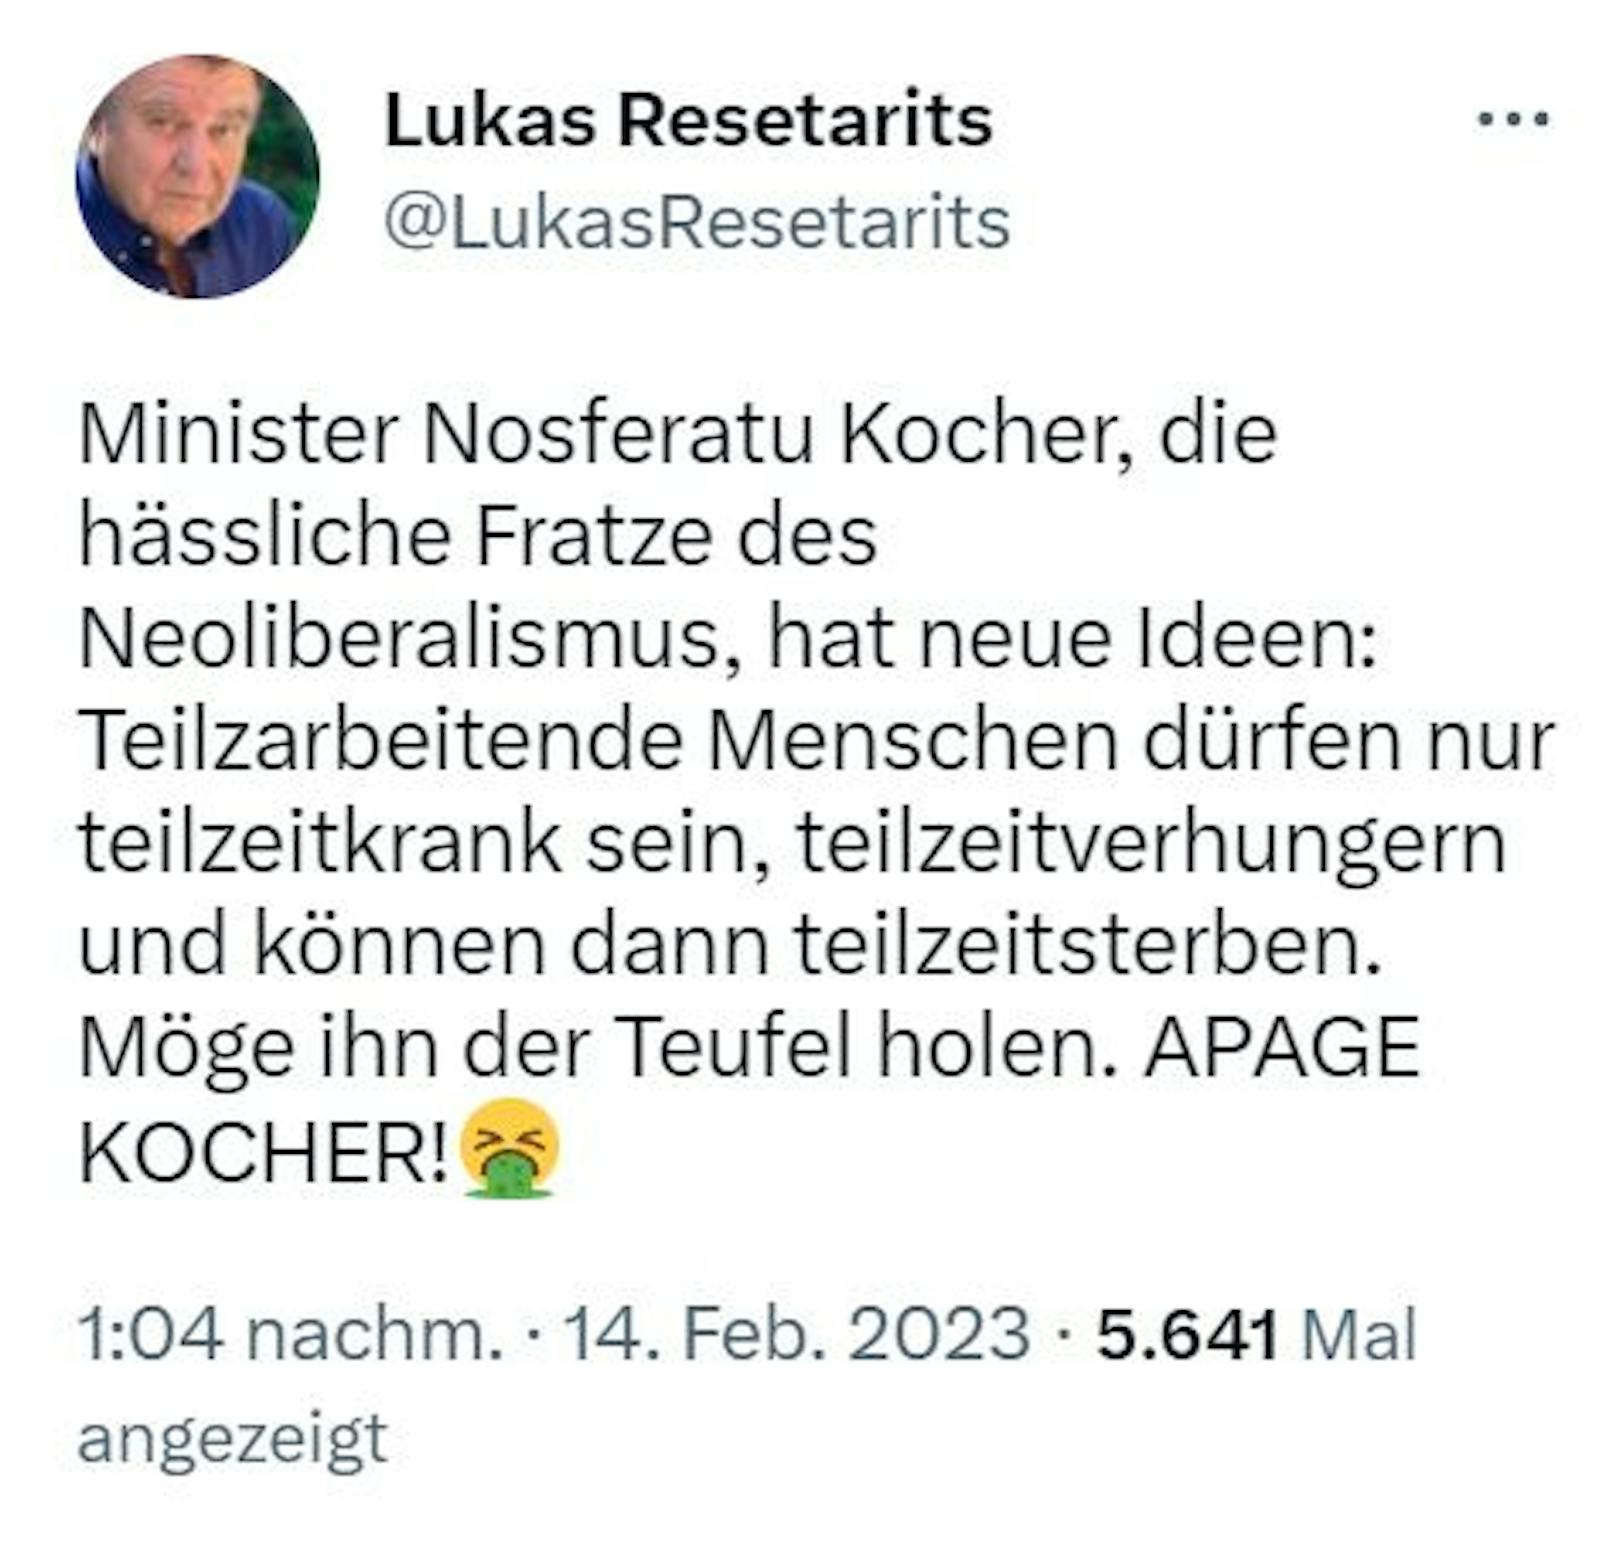 Lukas Resetarits rastete auf Twitter vollkommen aus.